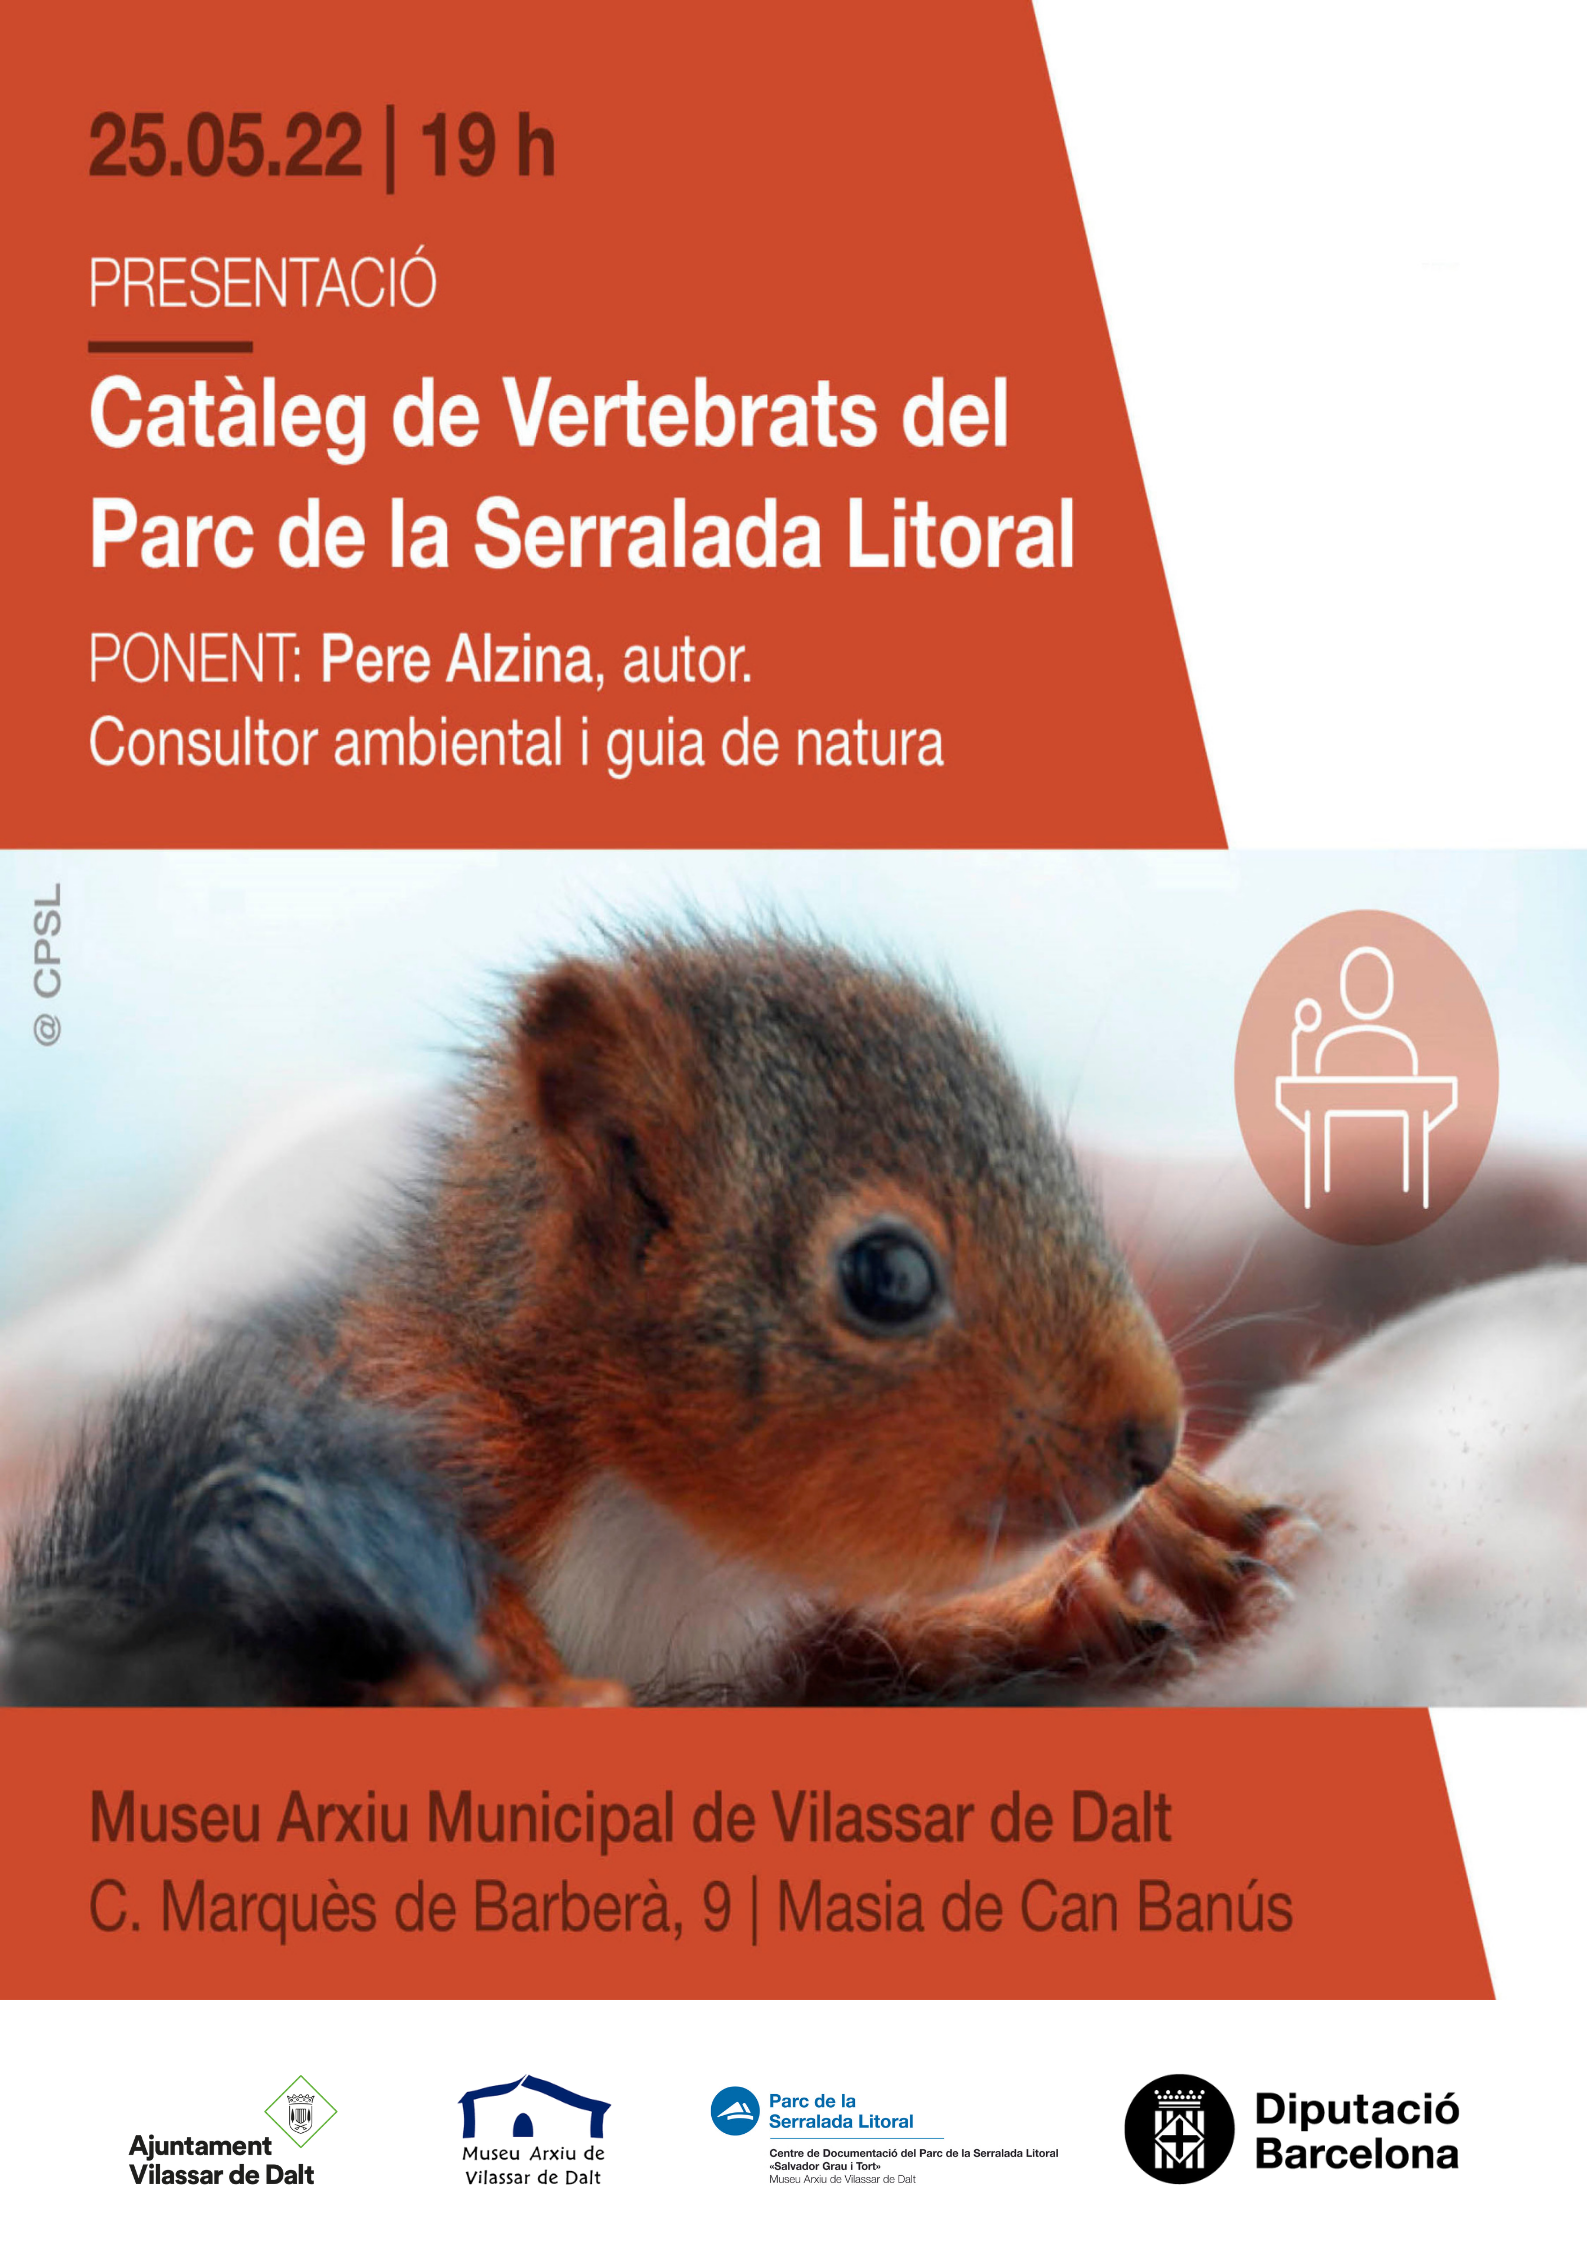 Presentació del Catàleg de vertebrats del Parc de la Serralada Litoral